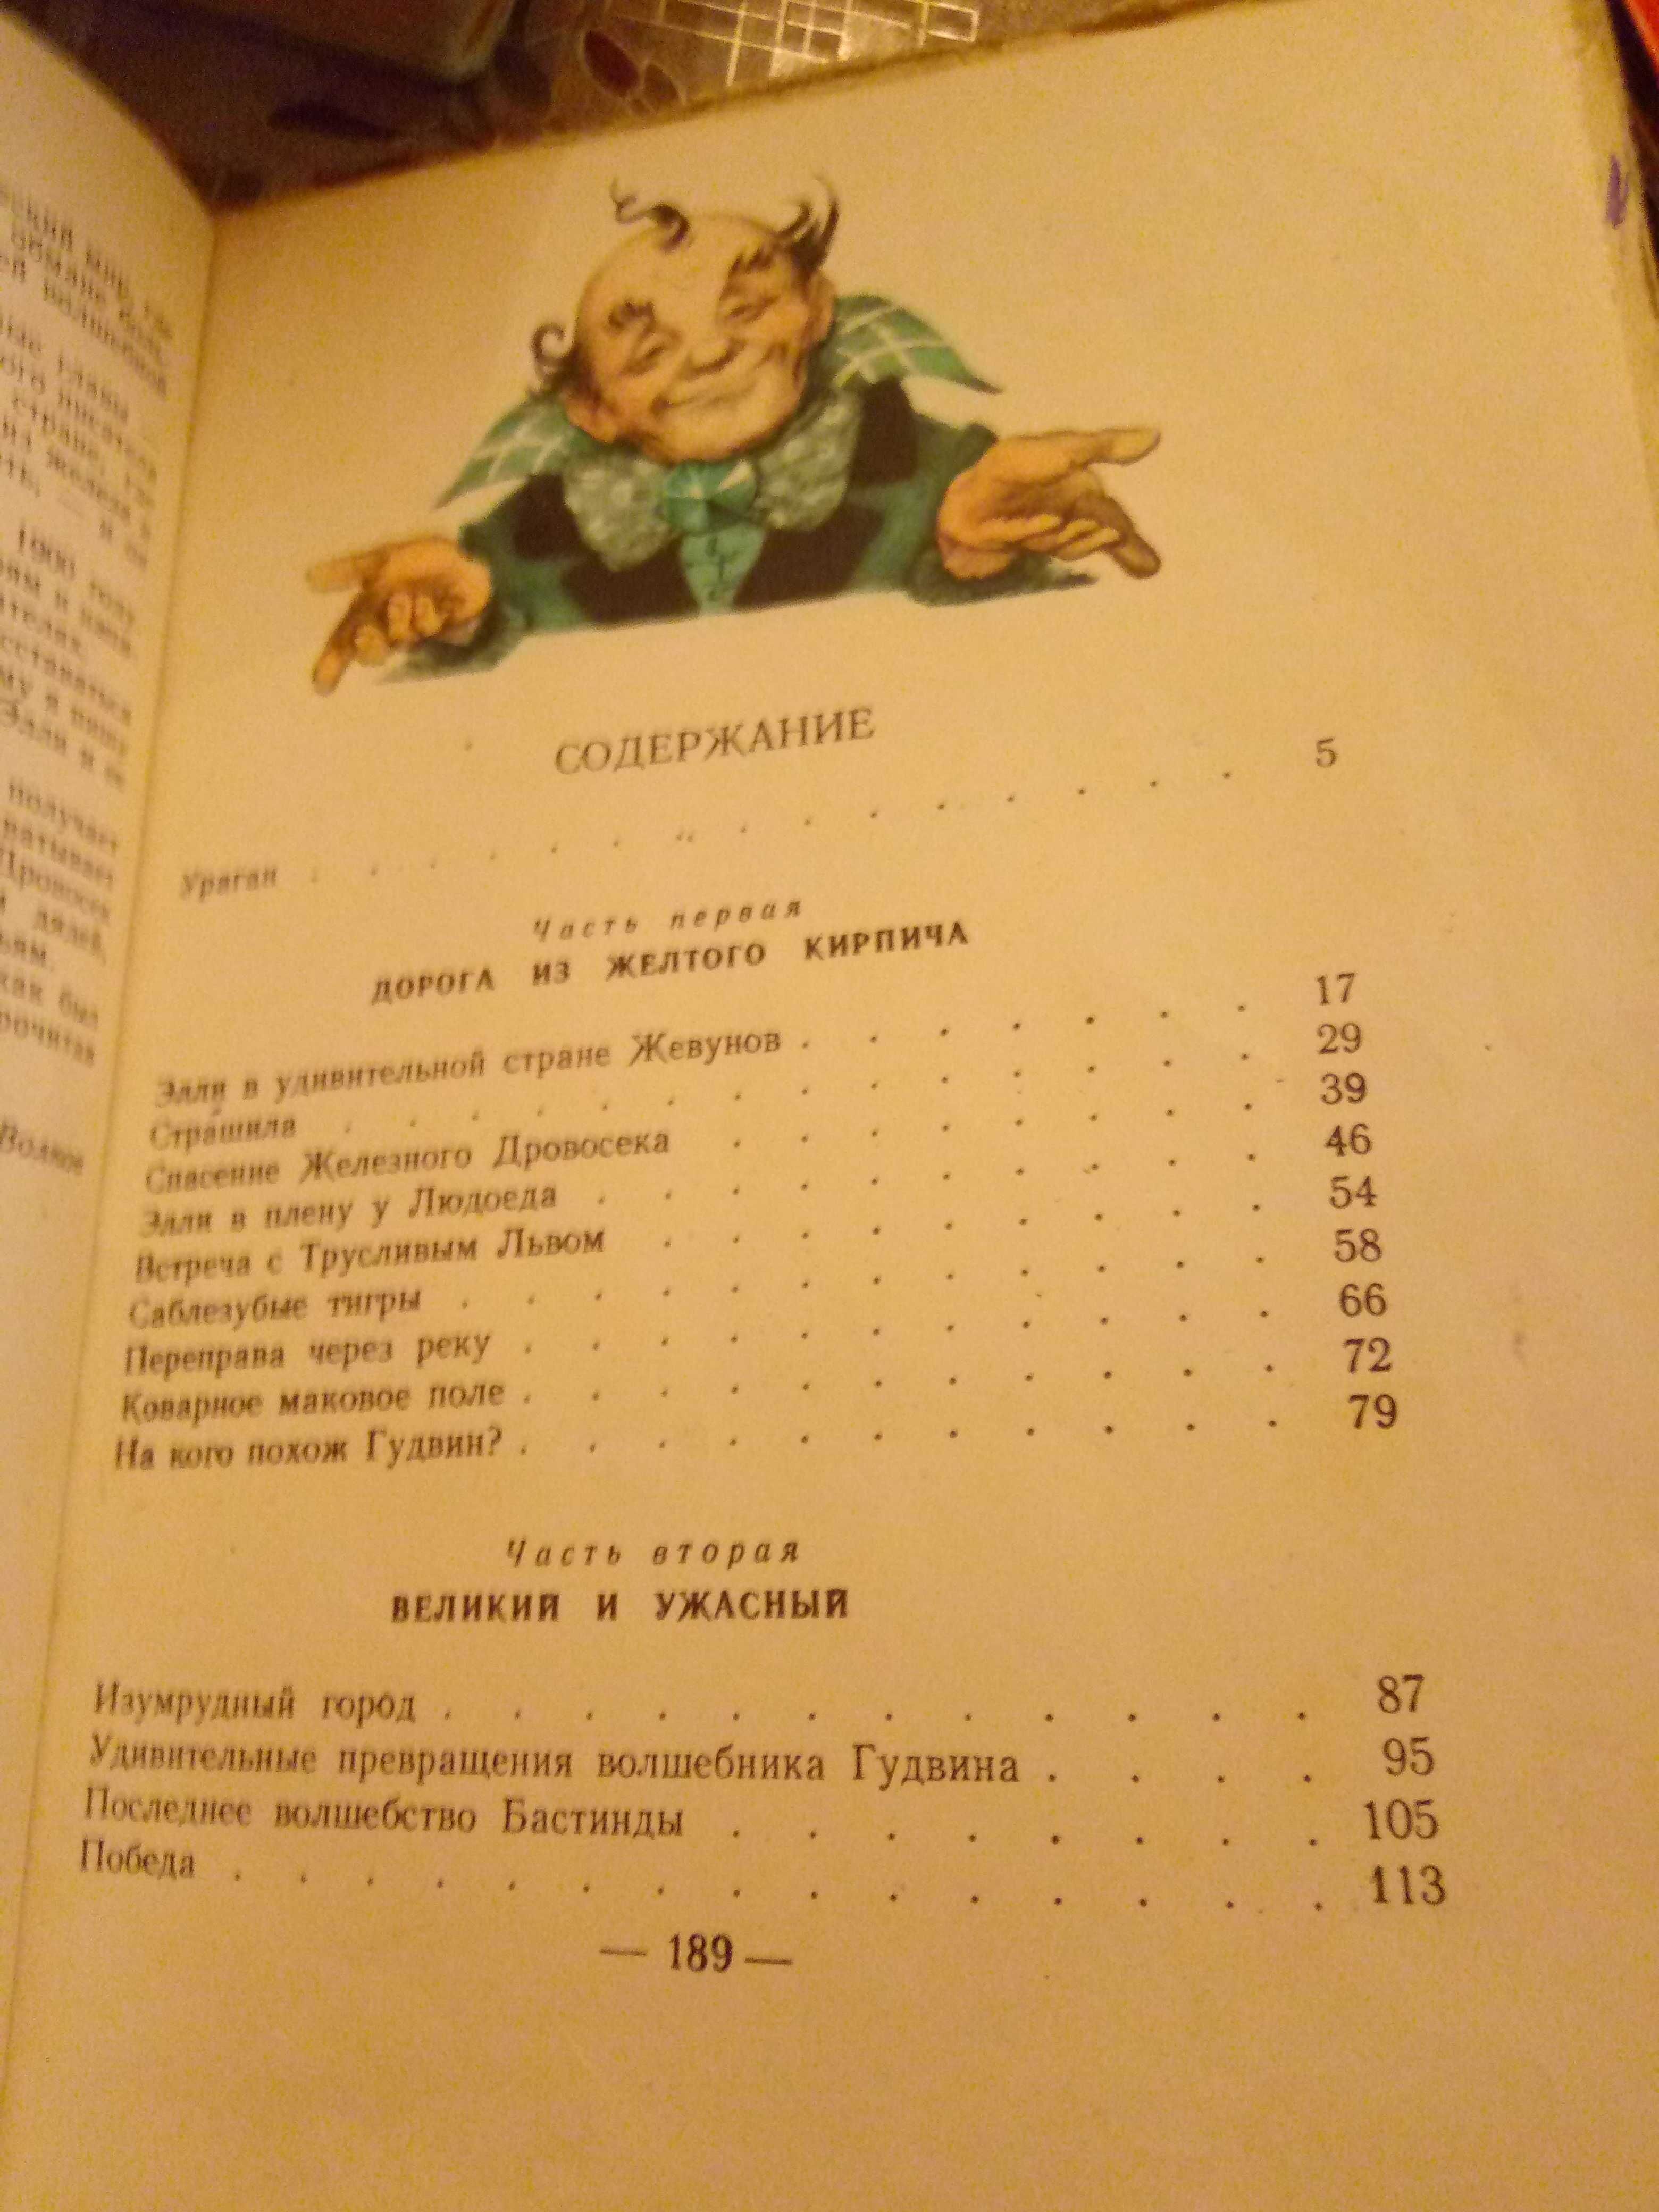 Продам редкую книгу А. Волкова "Волшебник изумрудного города ", 1962г